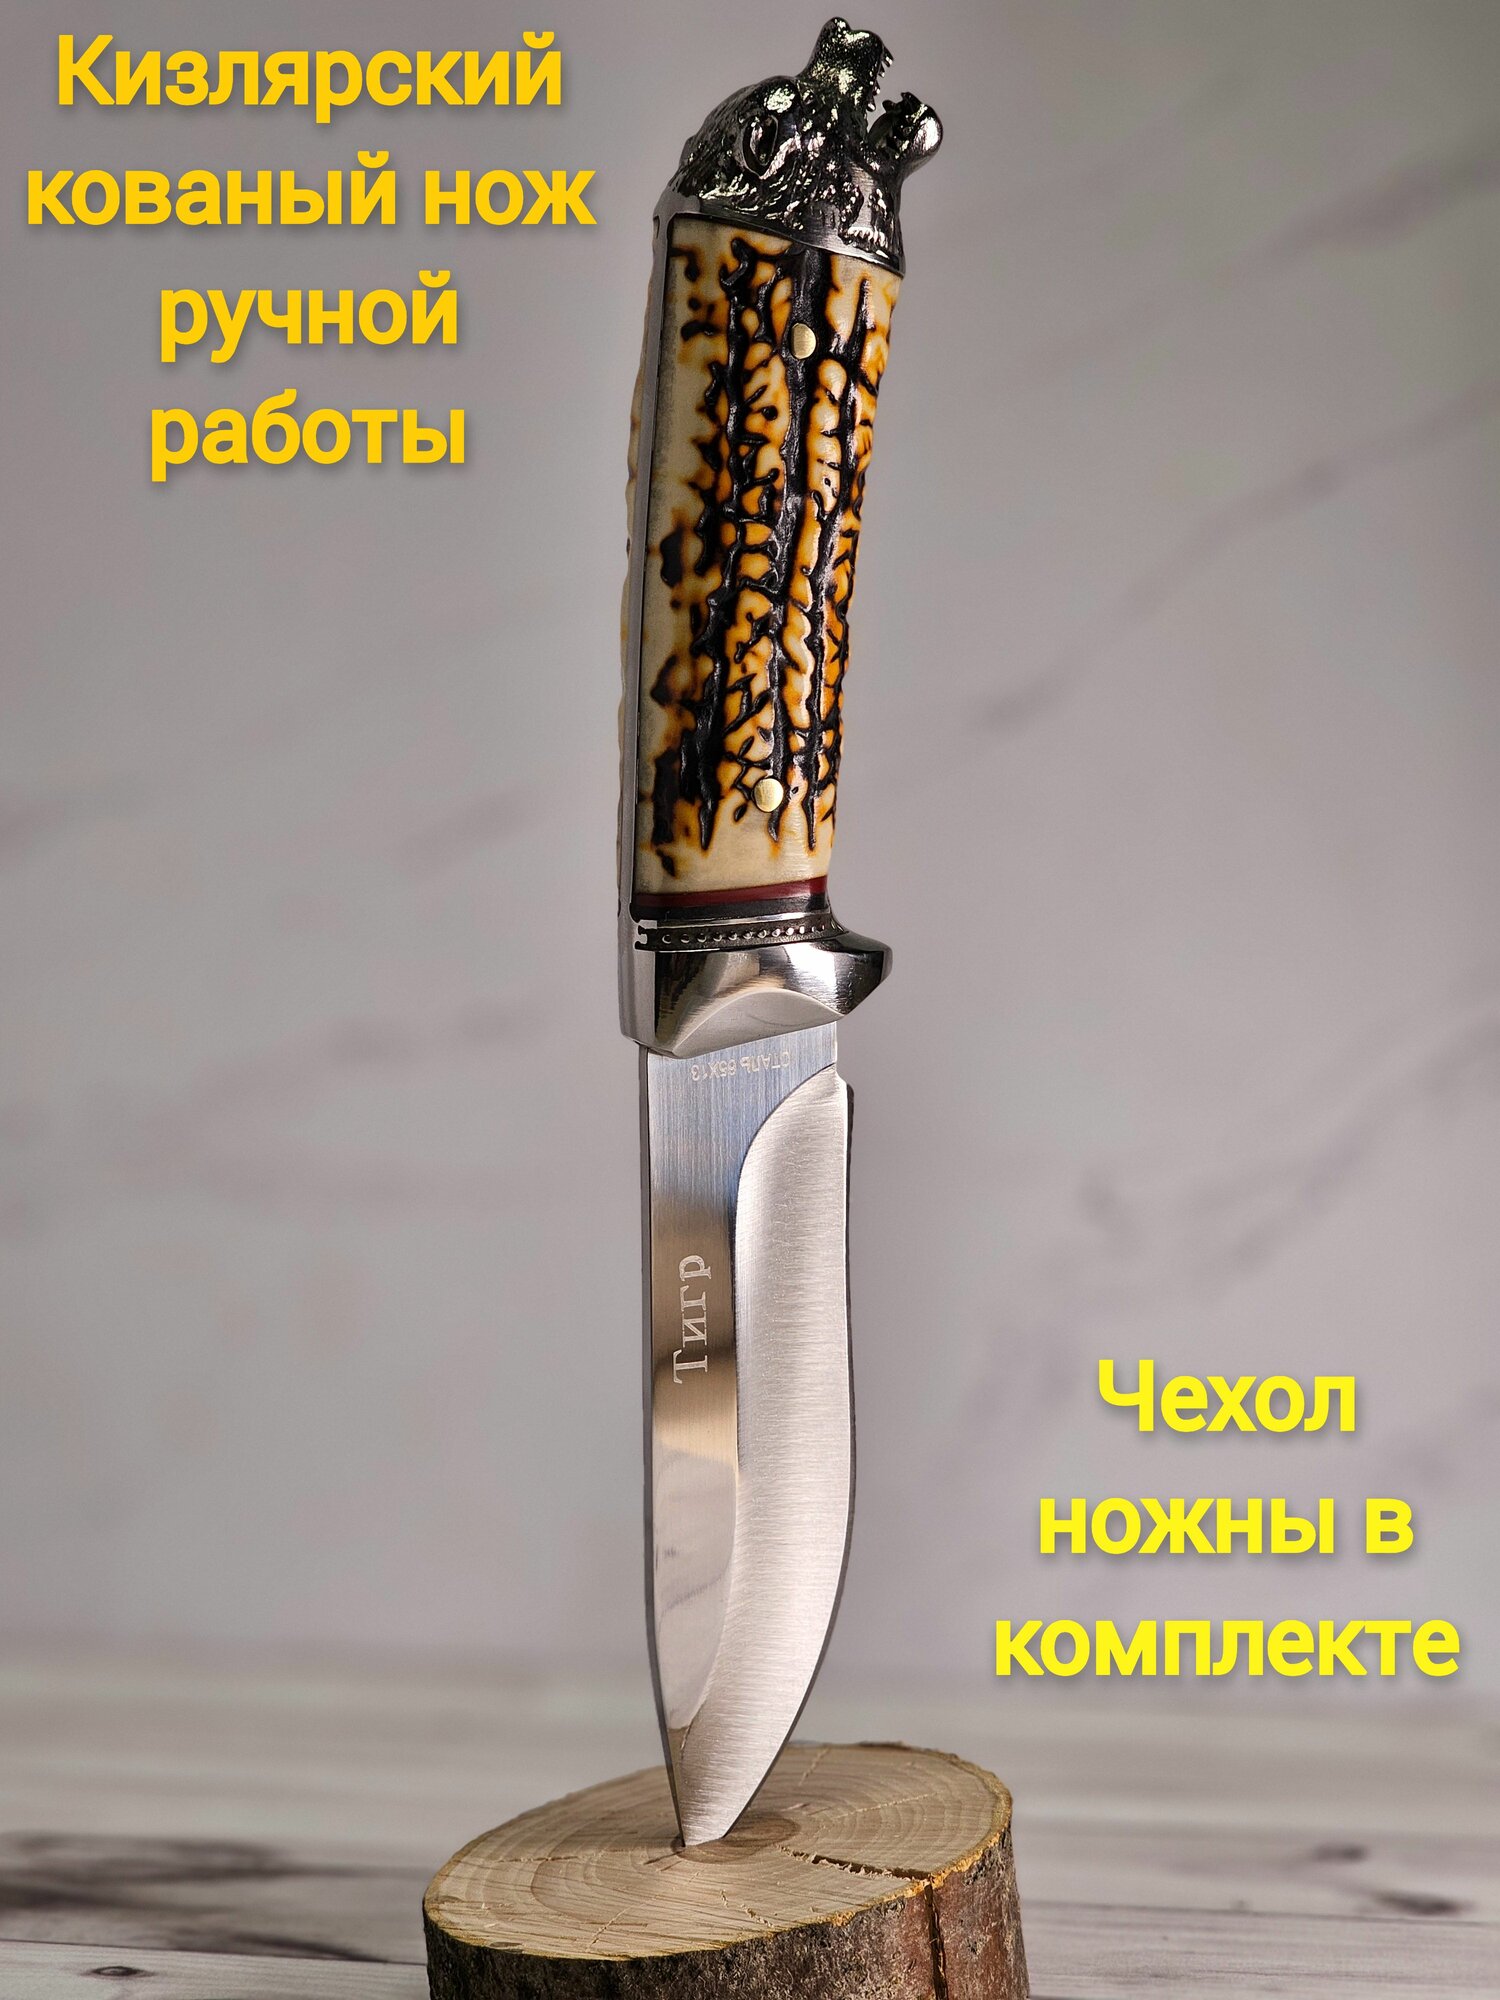 Кизлярский кованый нож ручной работы с чехлом ножнами